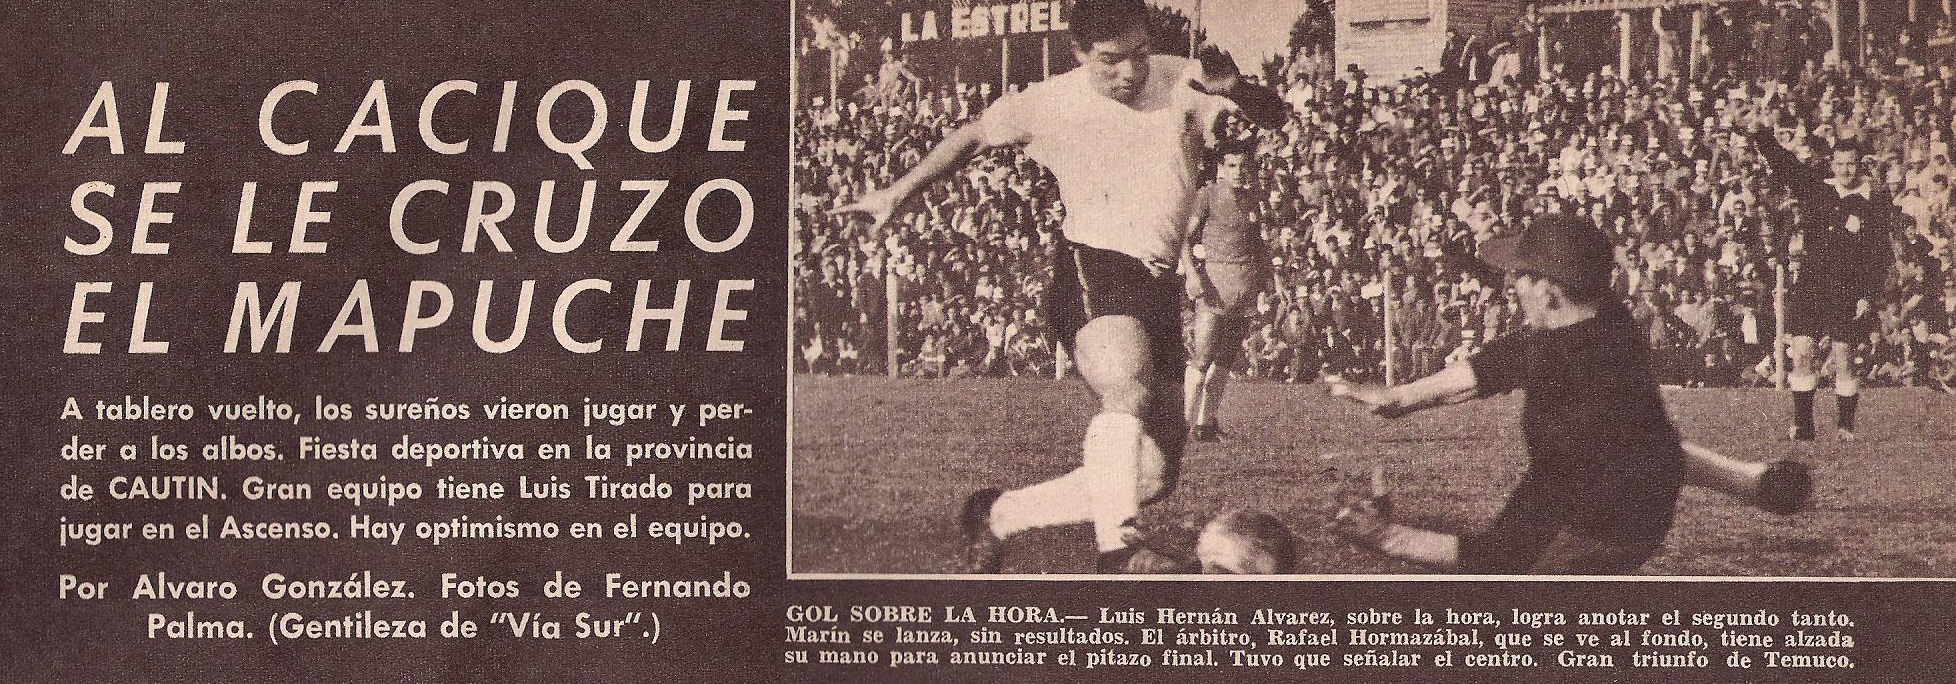 Temuco 4 - Colo Colo 2 Estadio Liceo, amistoso mayo de 1963)